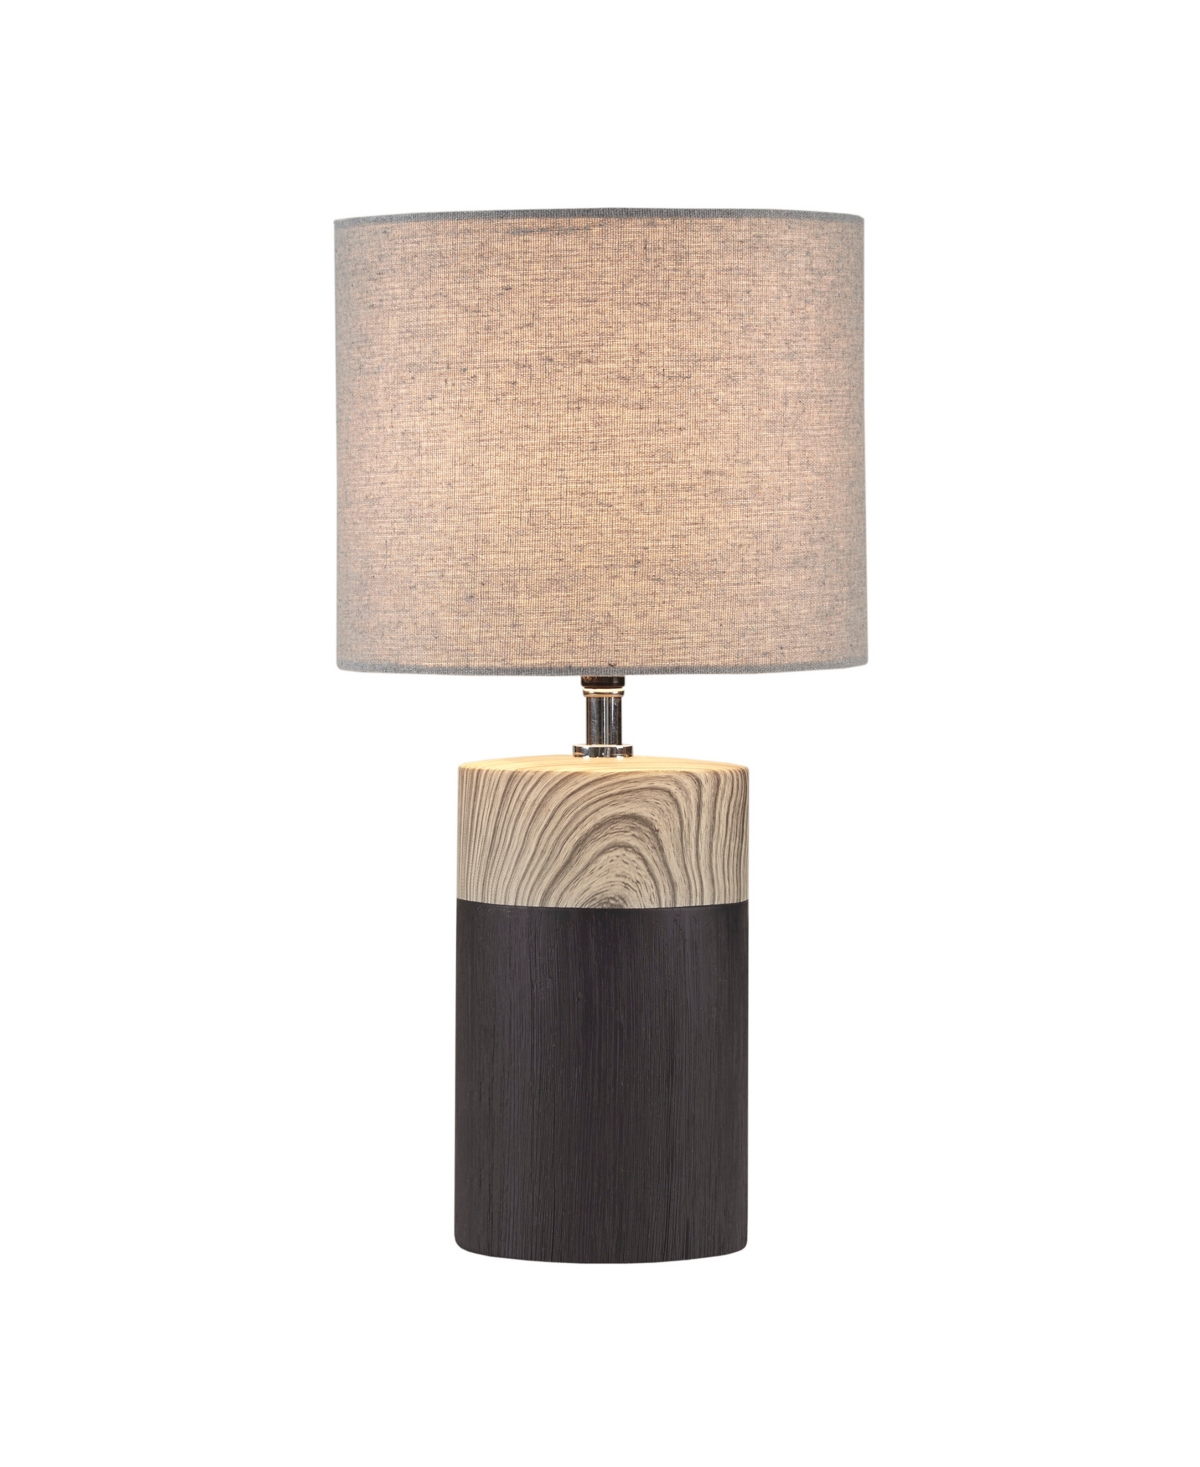 510 Design Nicolo Table Lamp